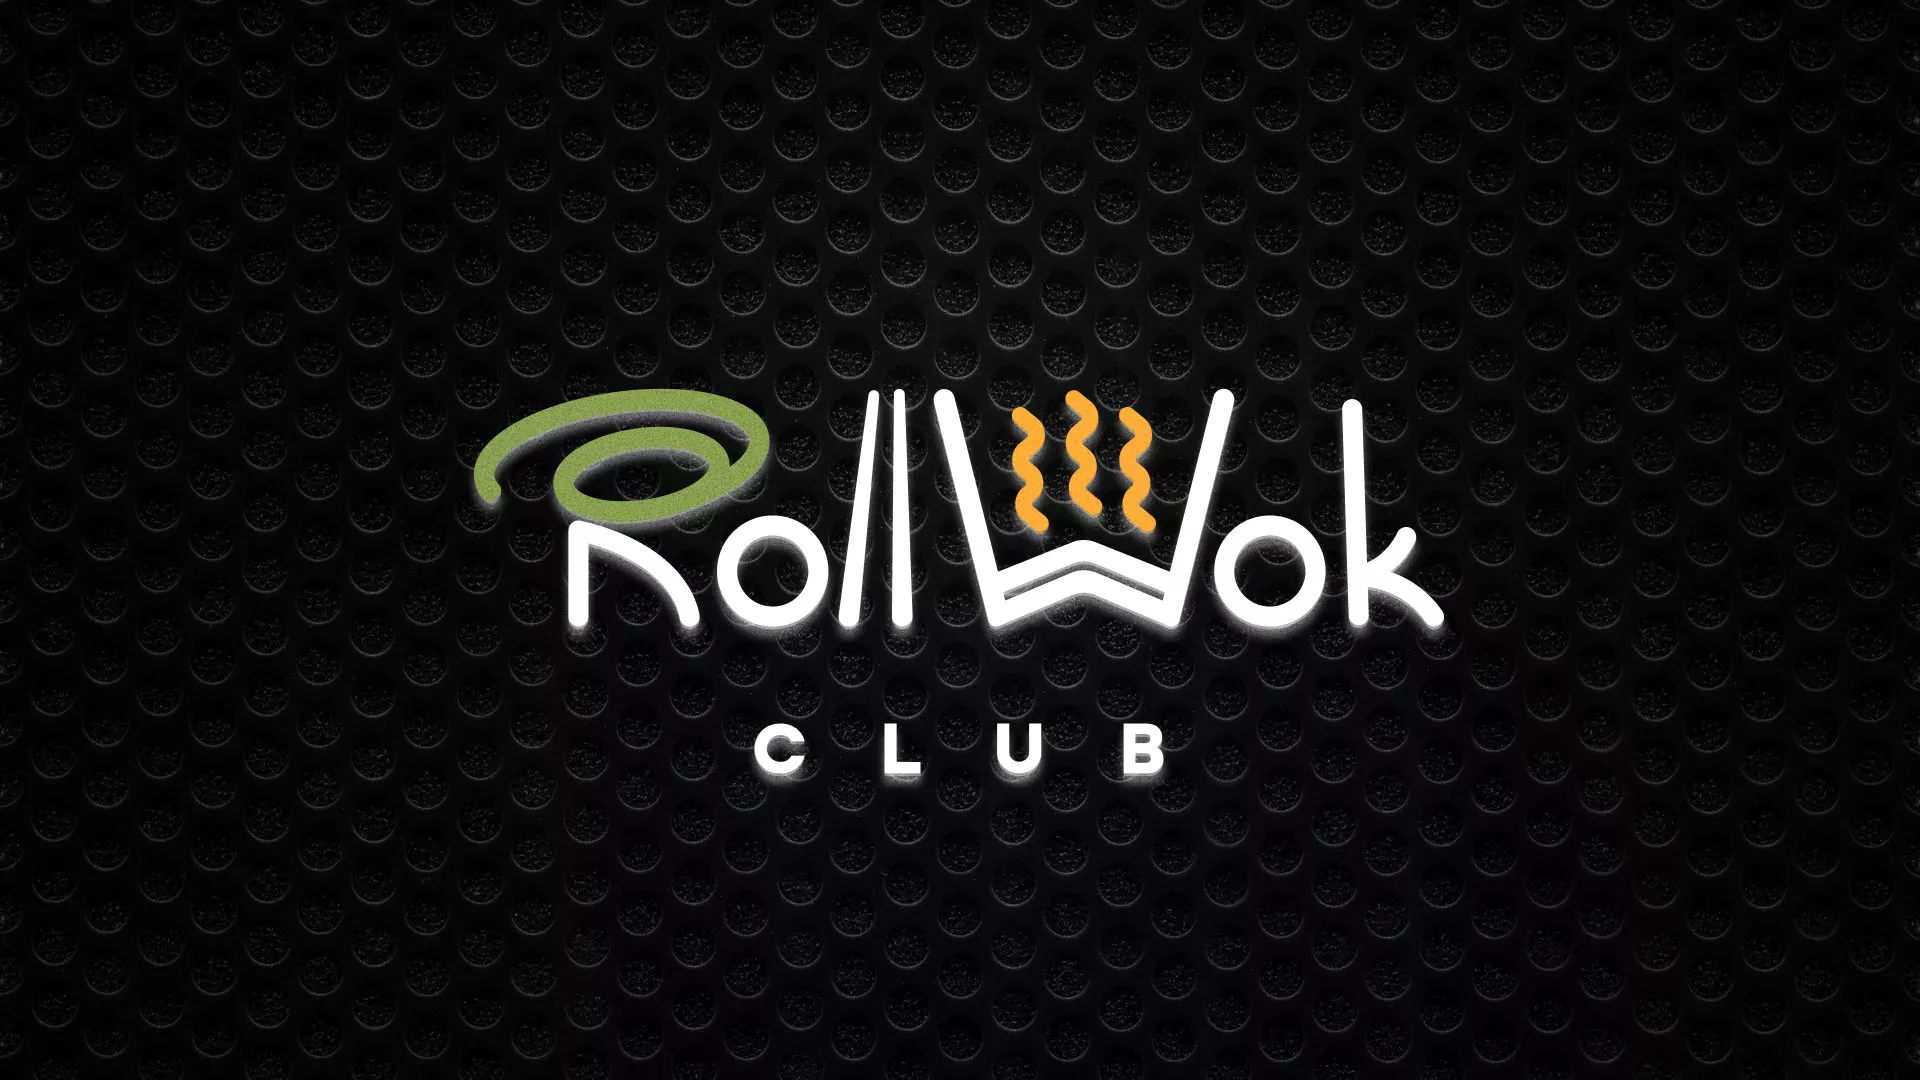 Брендирование торговых точек суши-бара «Roll Wok Club» в Таштаголе